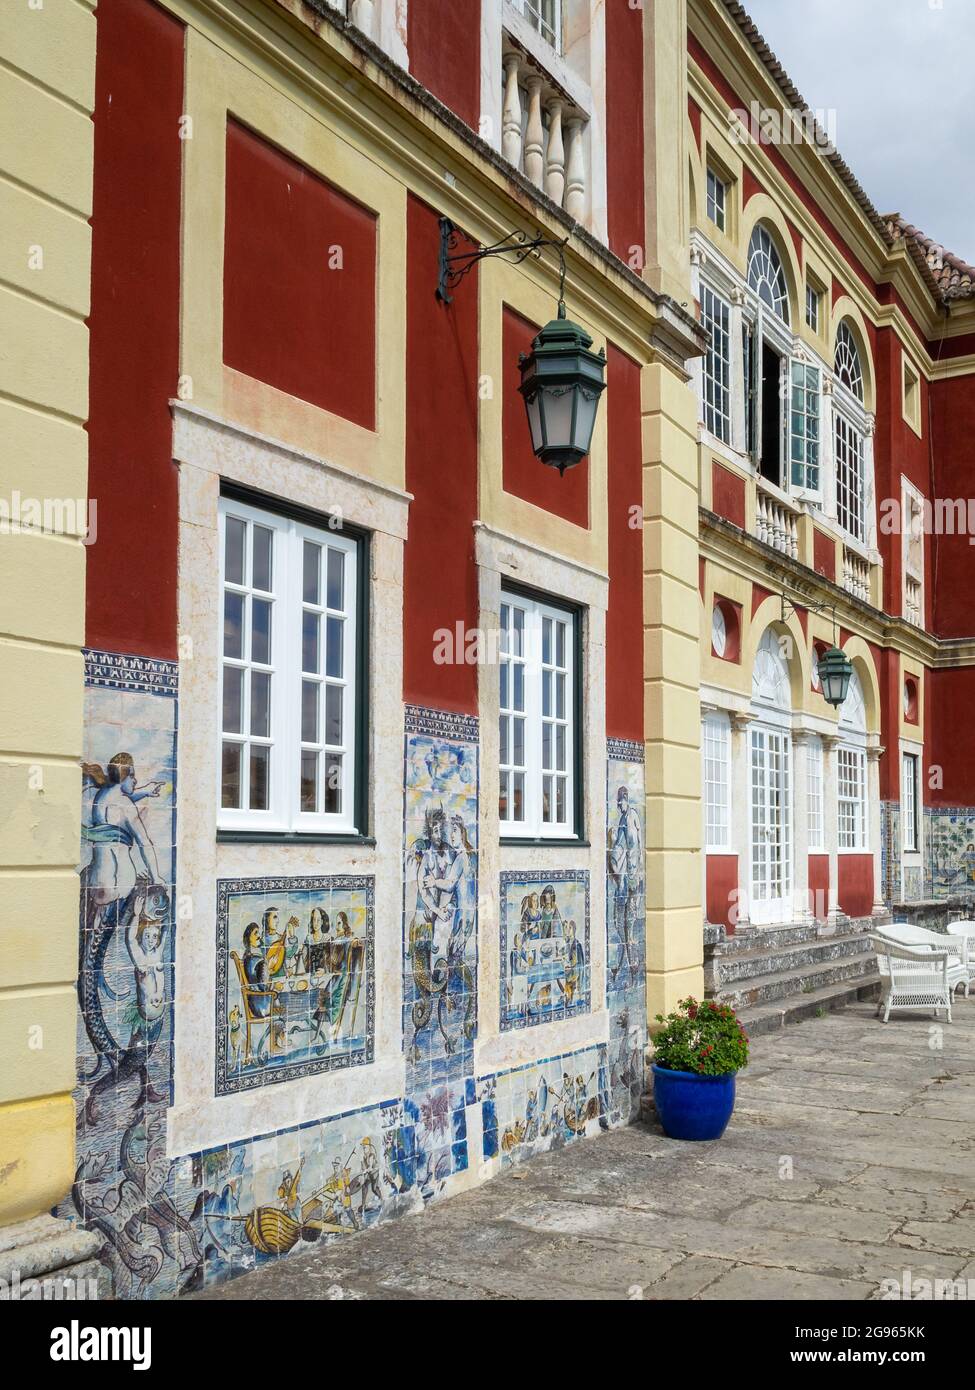 Fronteira Palace garden side facade, Lisbon Stock Photo